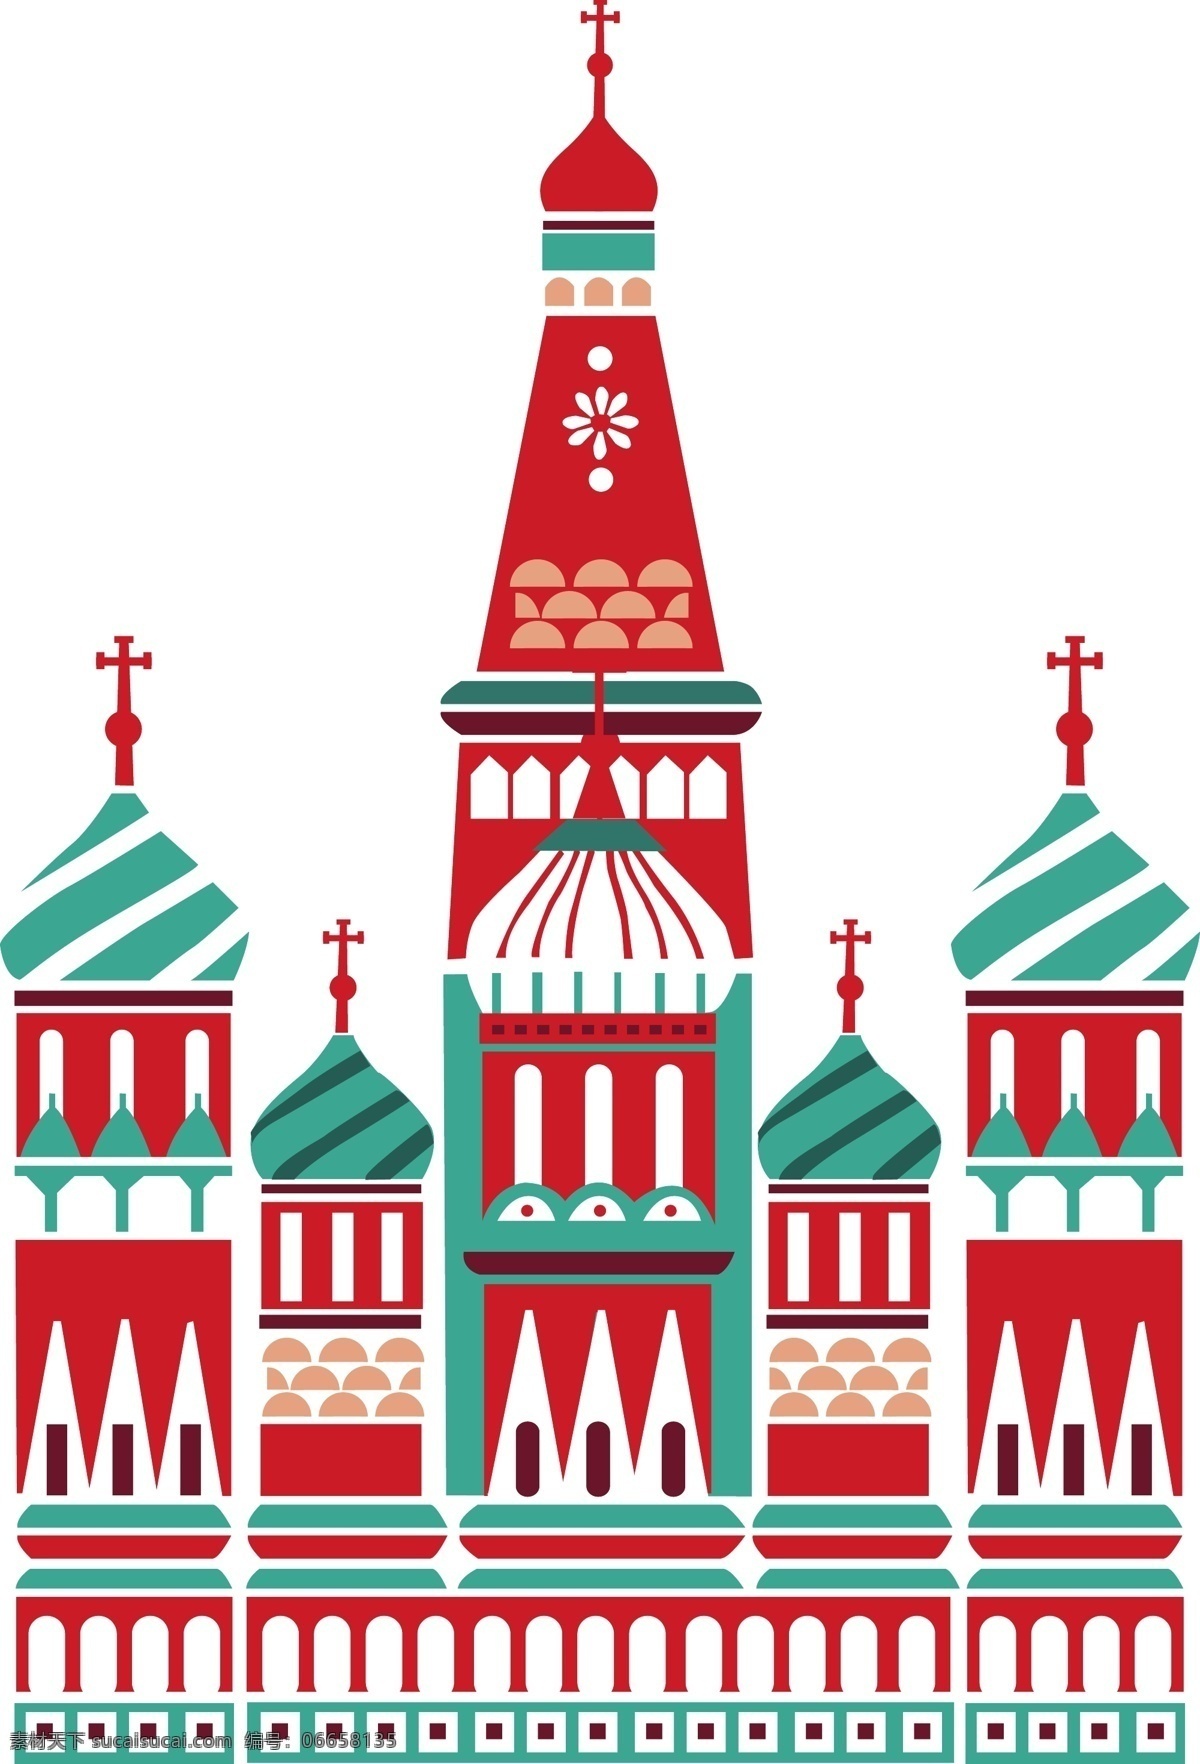 莫斯科 地标 建筑 矢量 矢量地标 城市建筑 扁平化建筑 设计色彩 莫斯科标志 矢量城堡设计 招贴设计